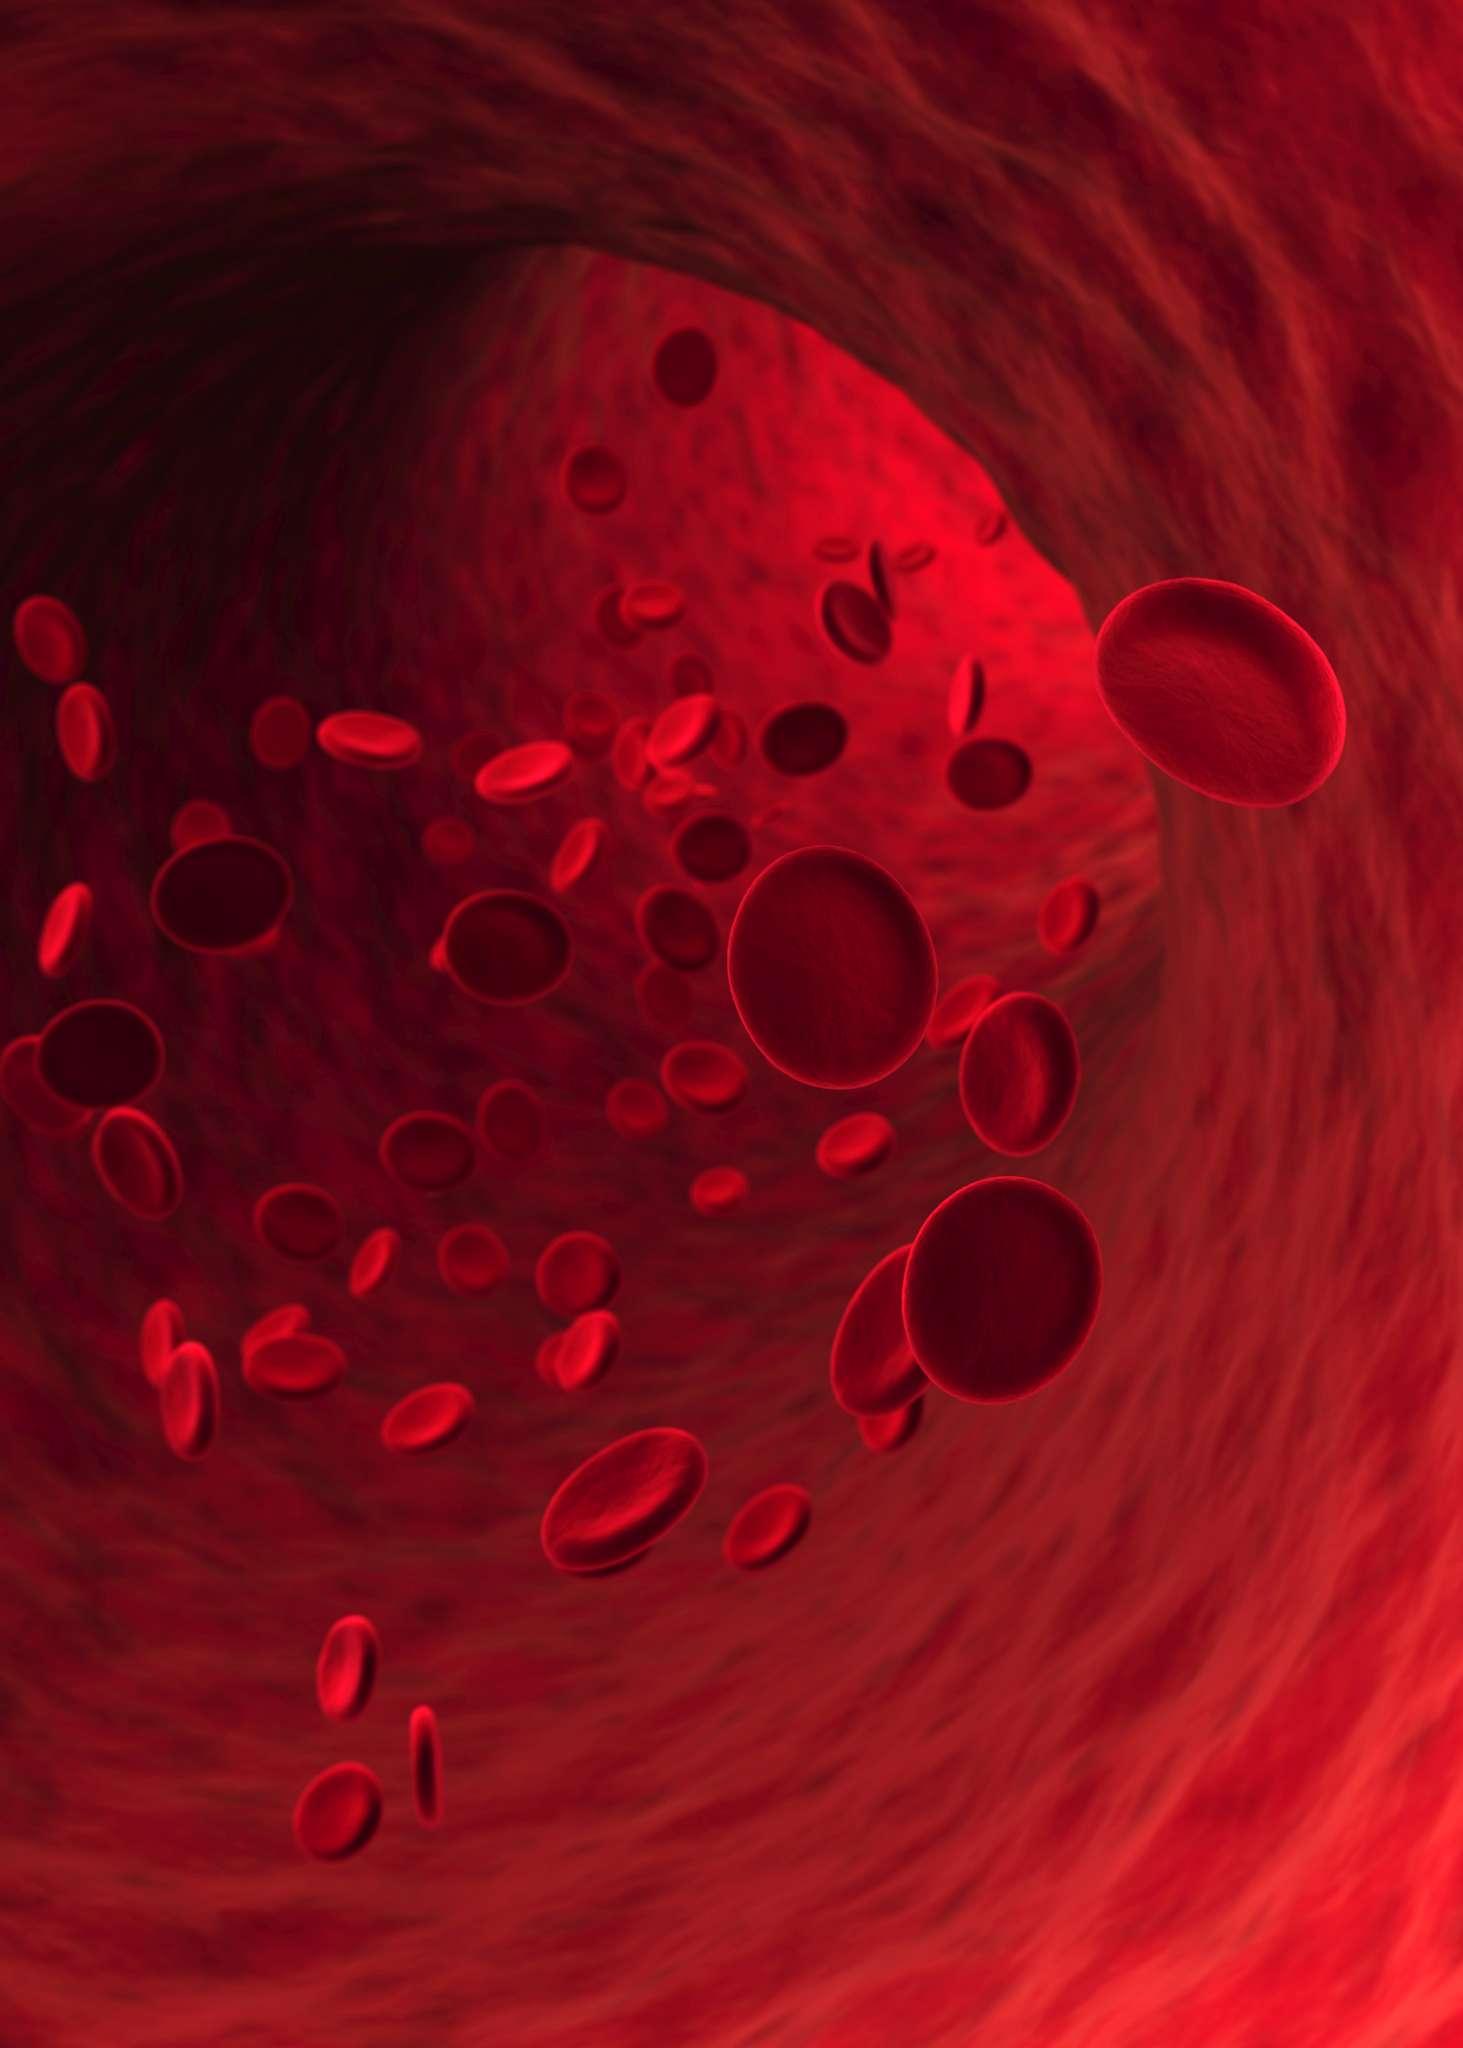 Rote Blutkörperchen, die in Blutgefäßen fließen. Geringe Schärfentiefe.